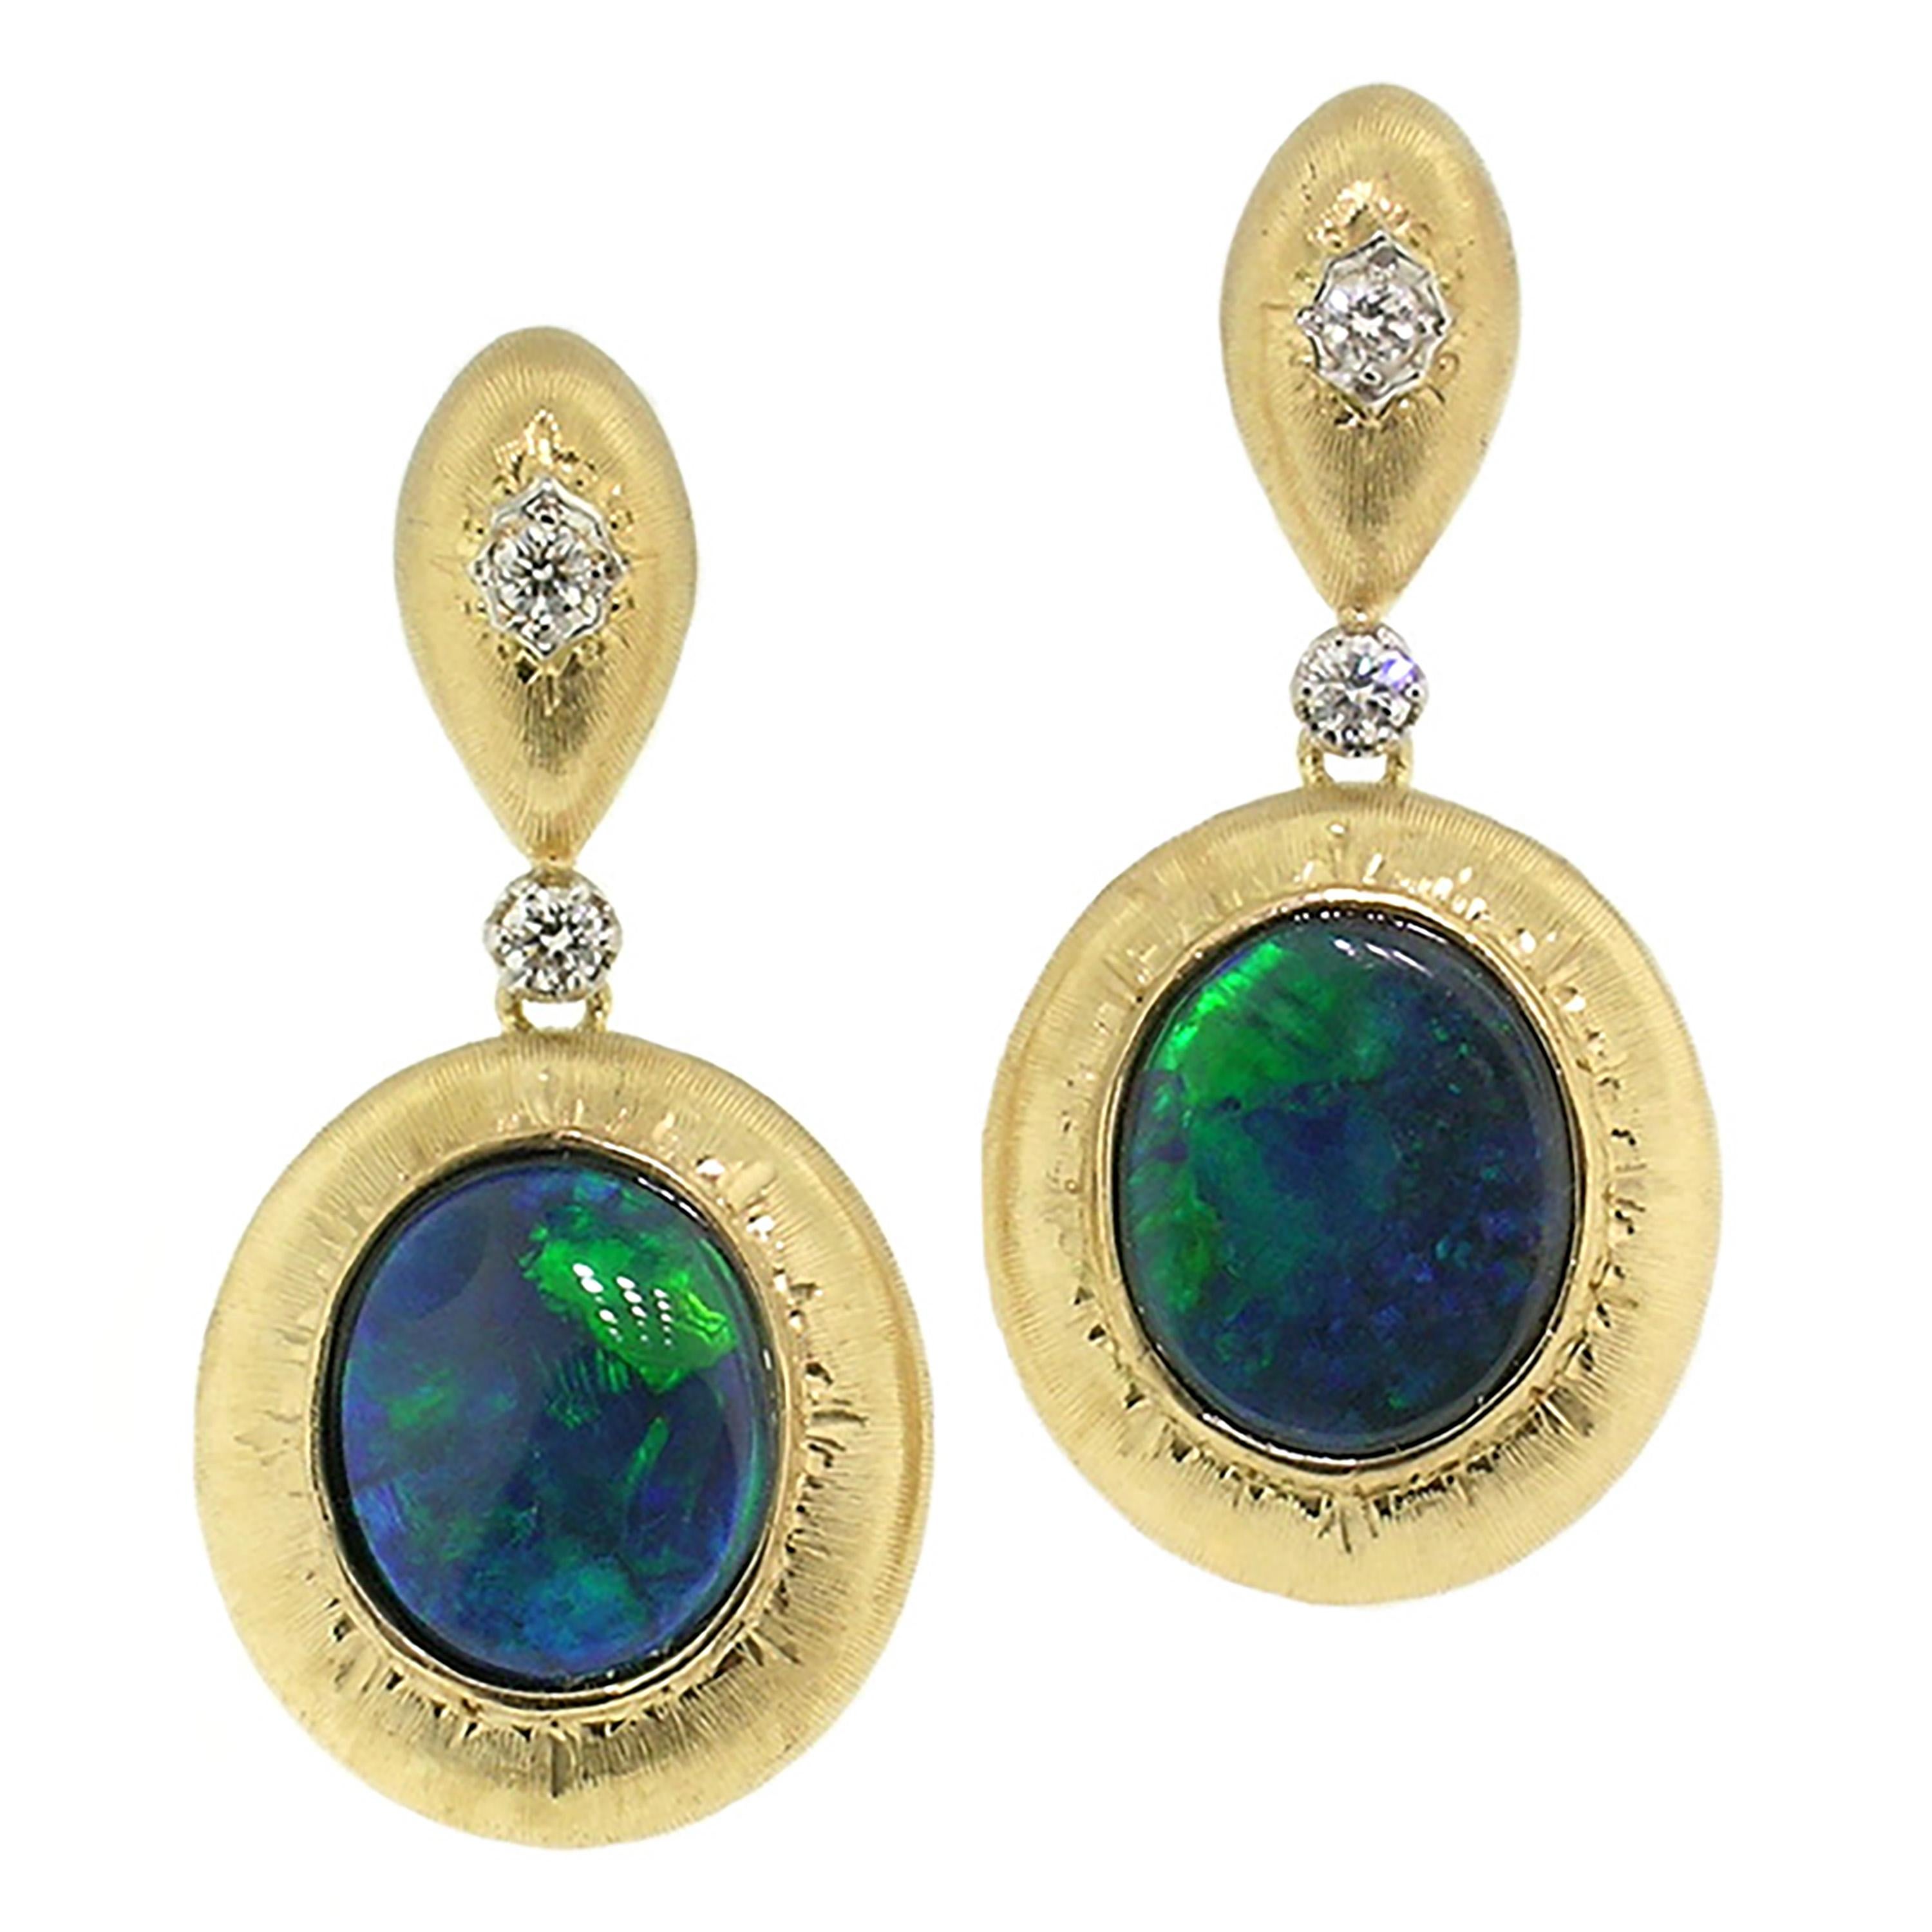 4.87ct Australian Black Opals in 18kt Earrings, Made in Italy by Cynthia Scott